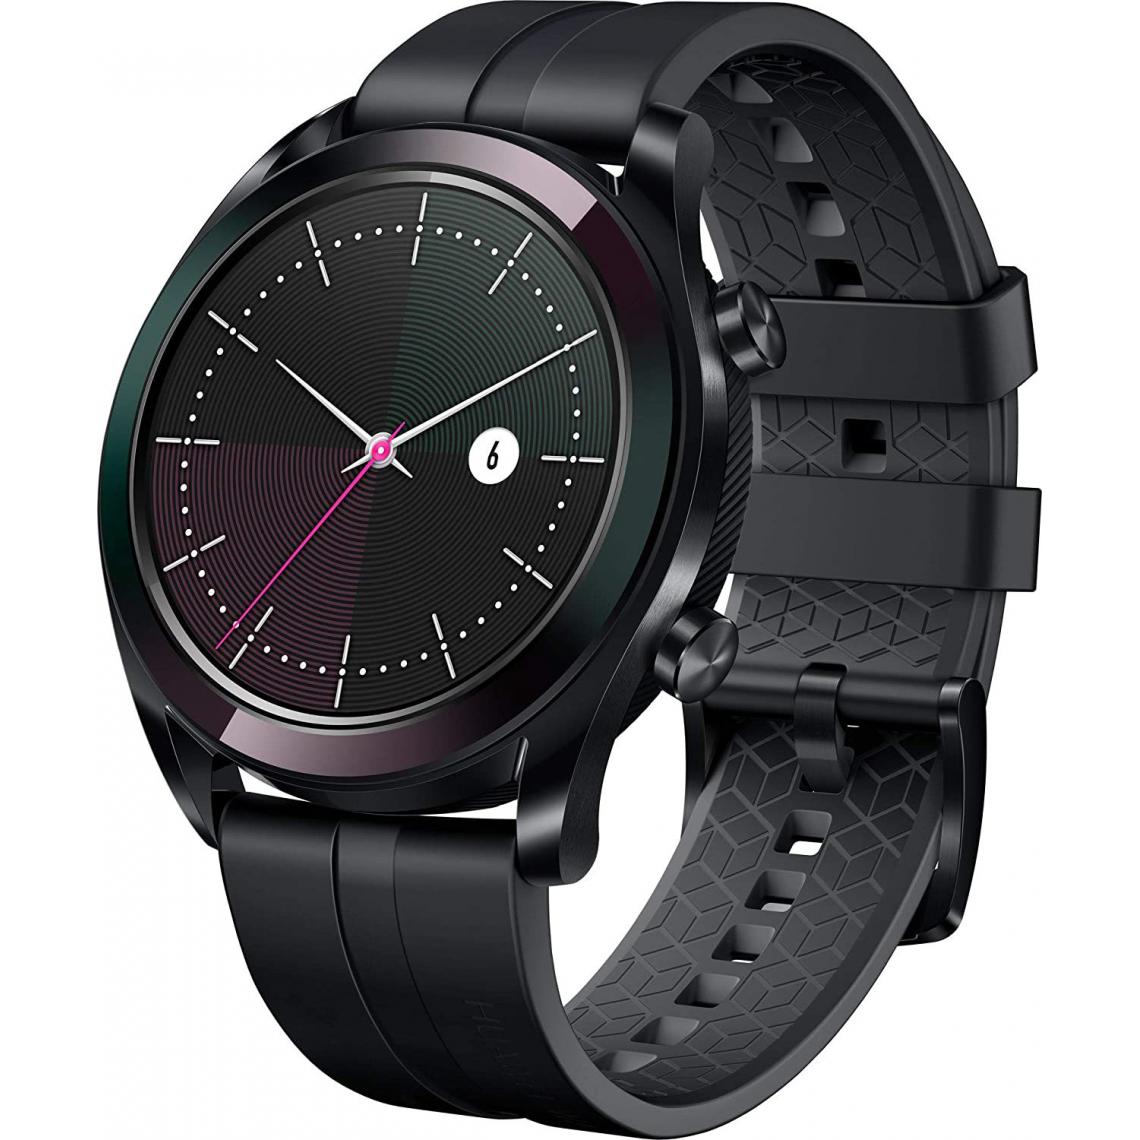 Chrono - Huawei Watch GT Elegant Smartwatch (écran tactile Amoled 42 mm, GPS, tracker de fitness, mesure de la fréquence cardiaque, étanche 5 ATM)ï¼noirï¼ - Montre connectée